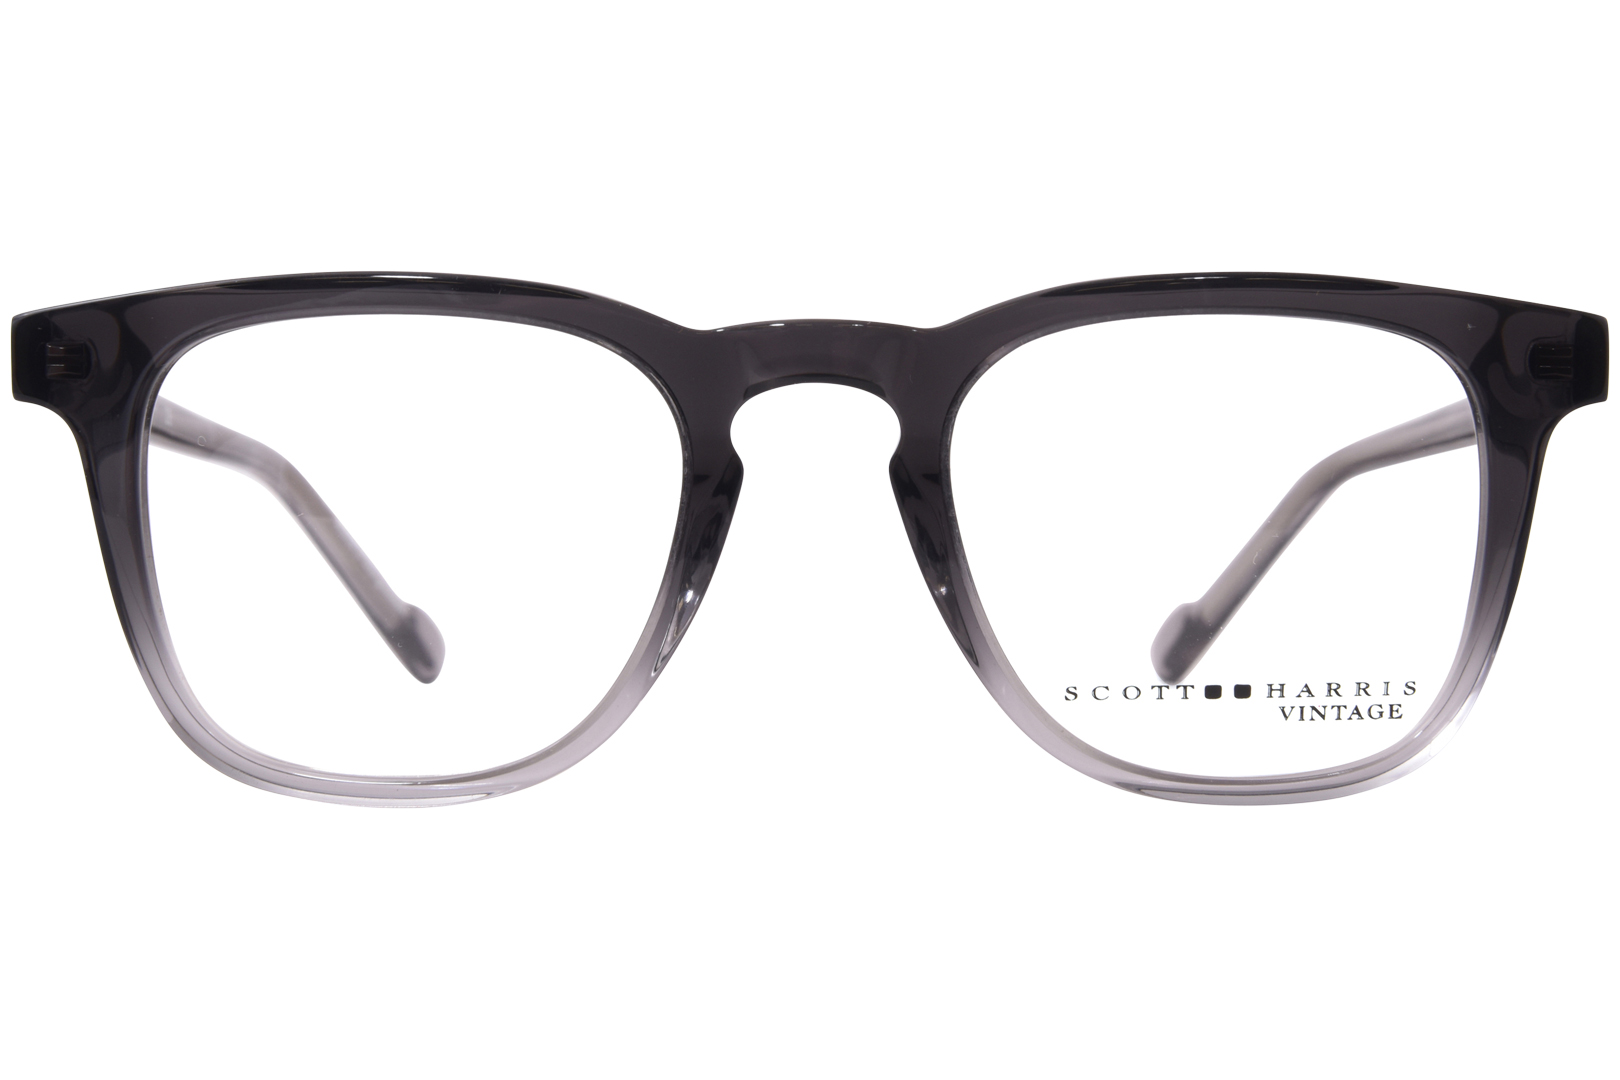 Scott Harris SH-VIN-60 Eyeglasses Men's Full Rim Square Shape ...